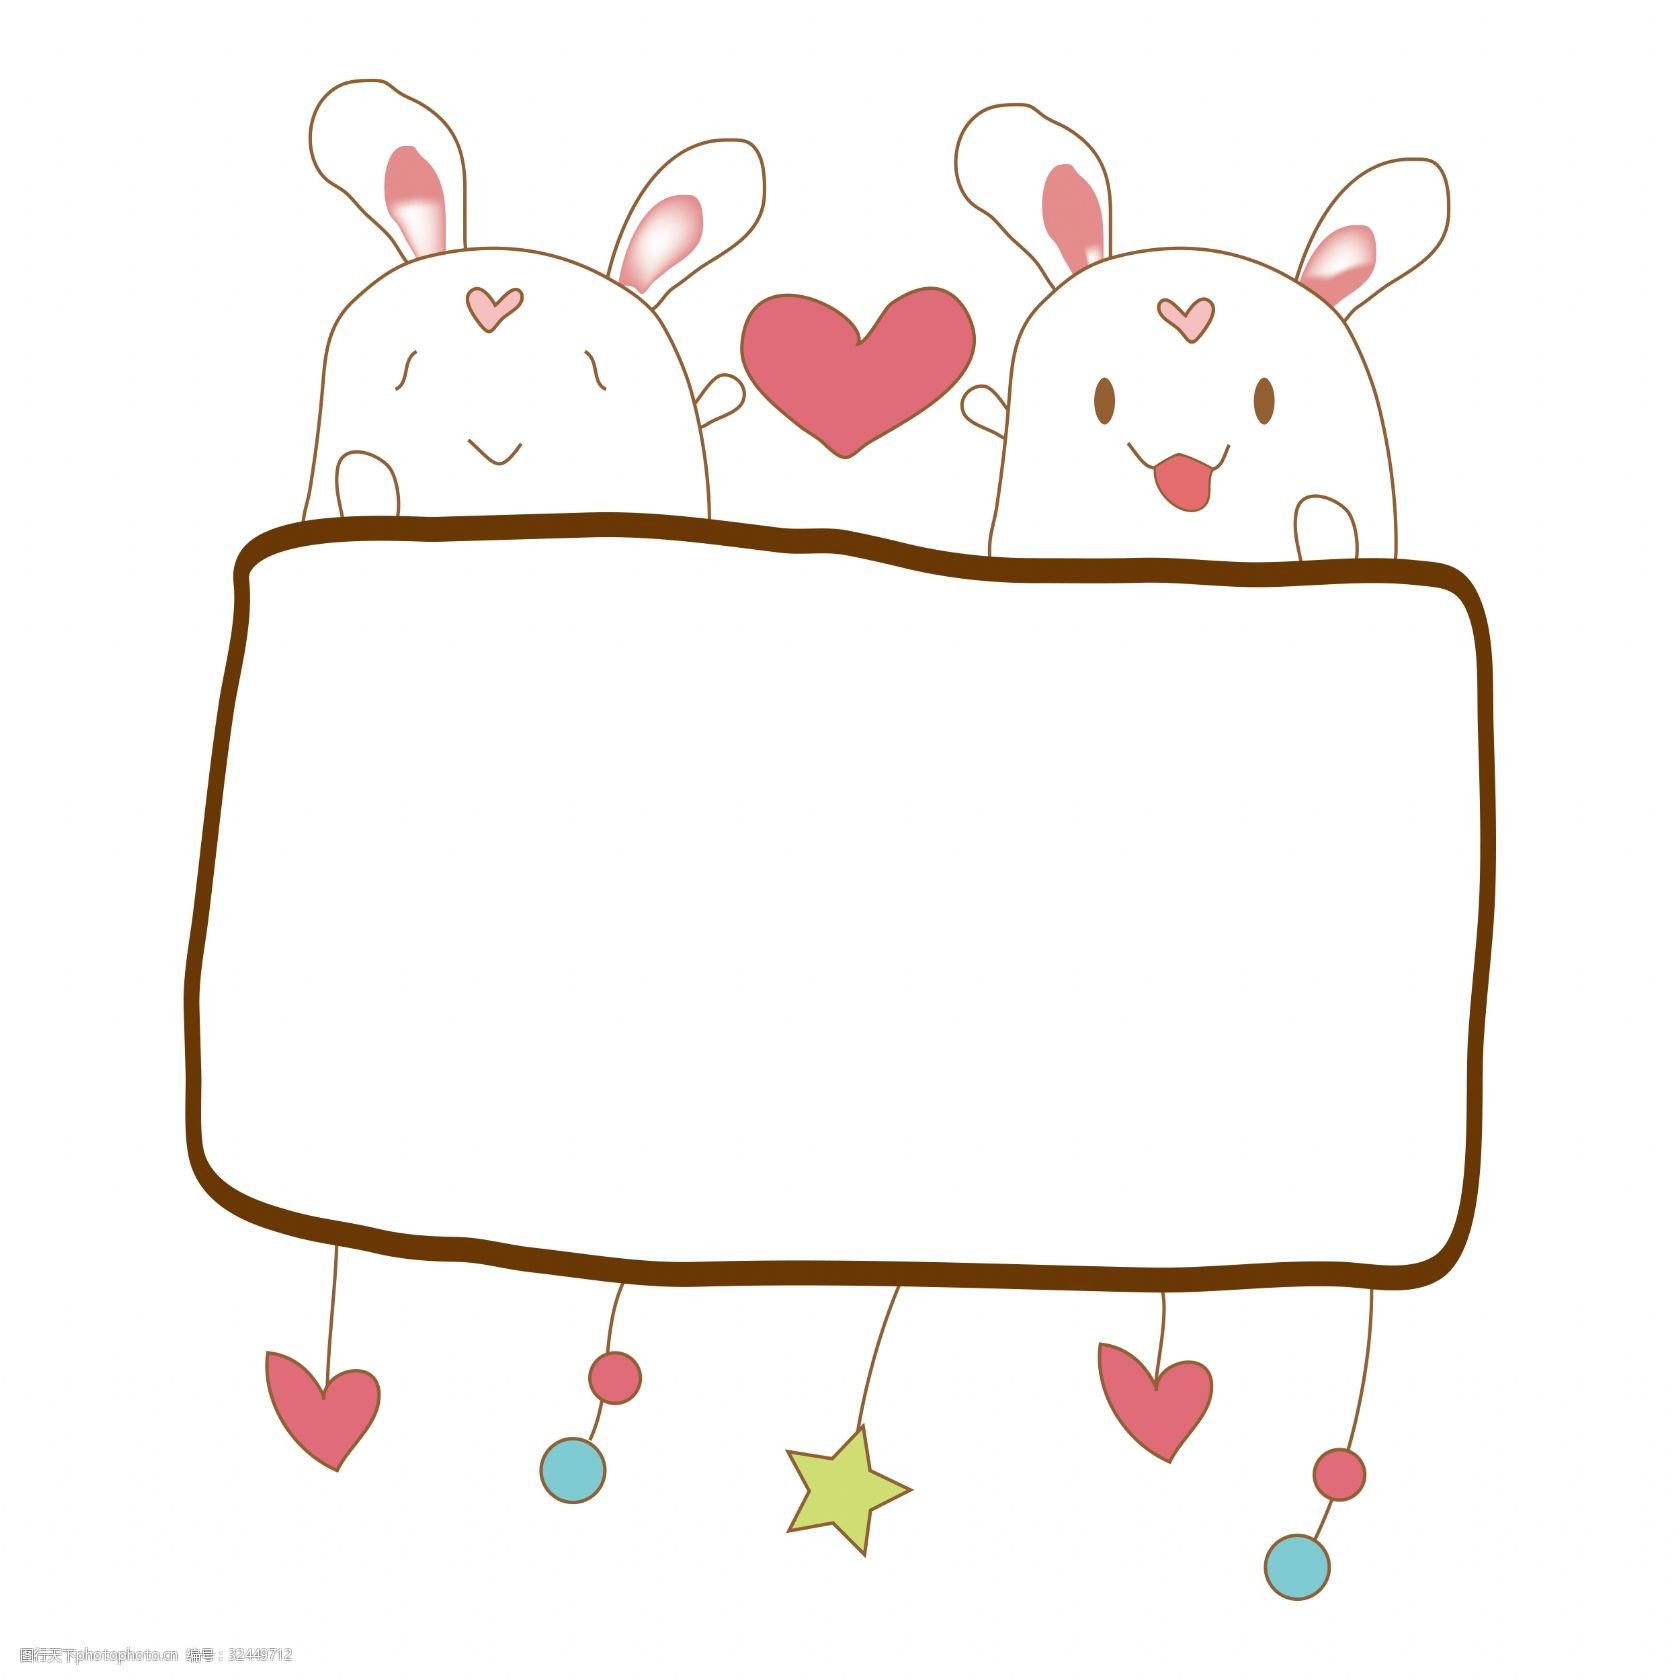 关键词:可爱小兔子边框装饰 可爱的边框 小兔子边框 卡通边框 边框